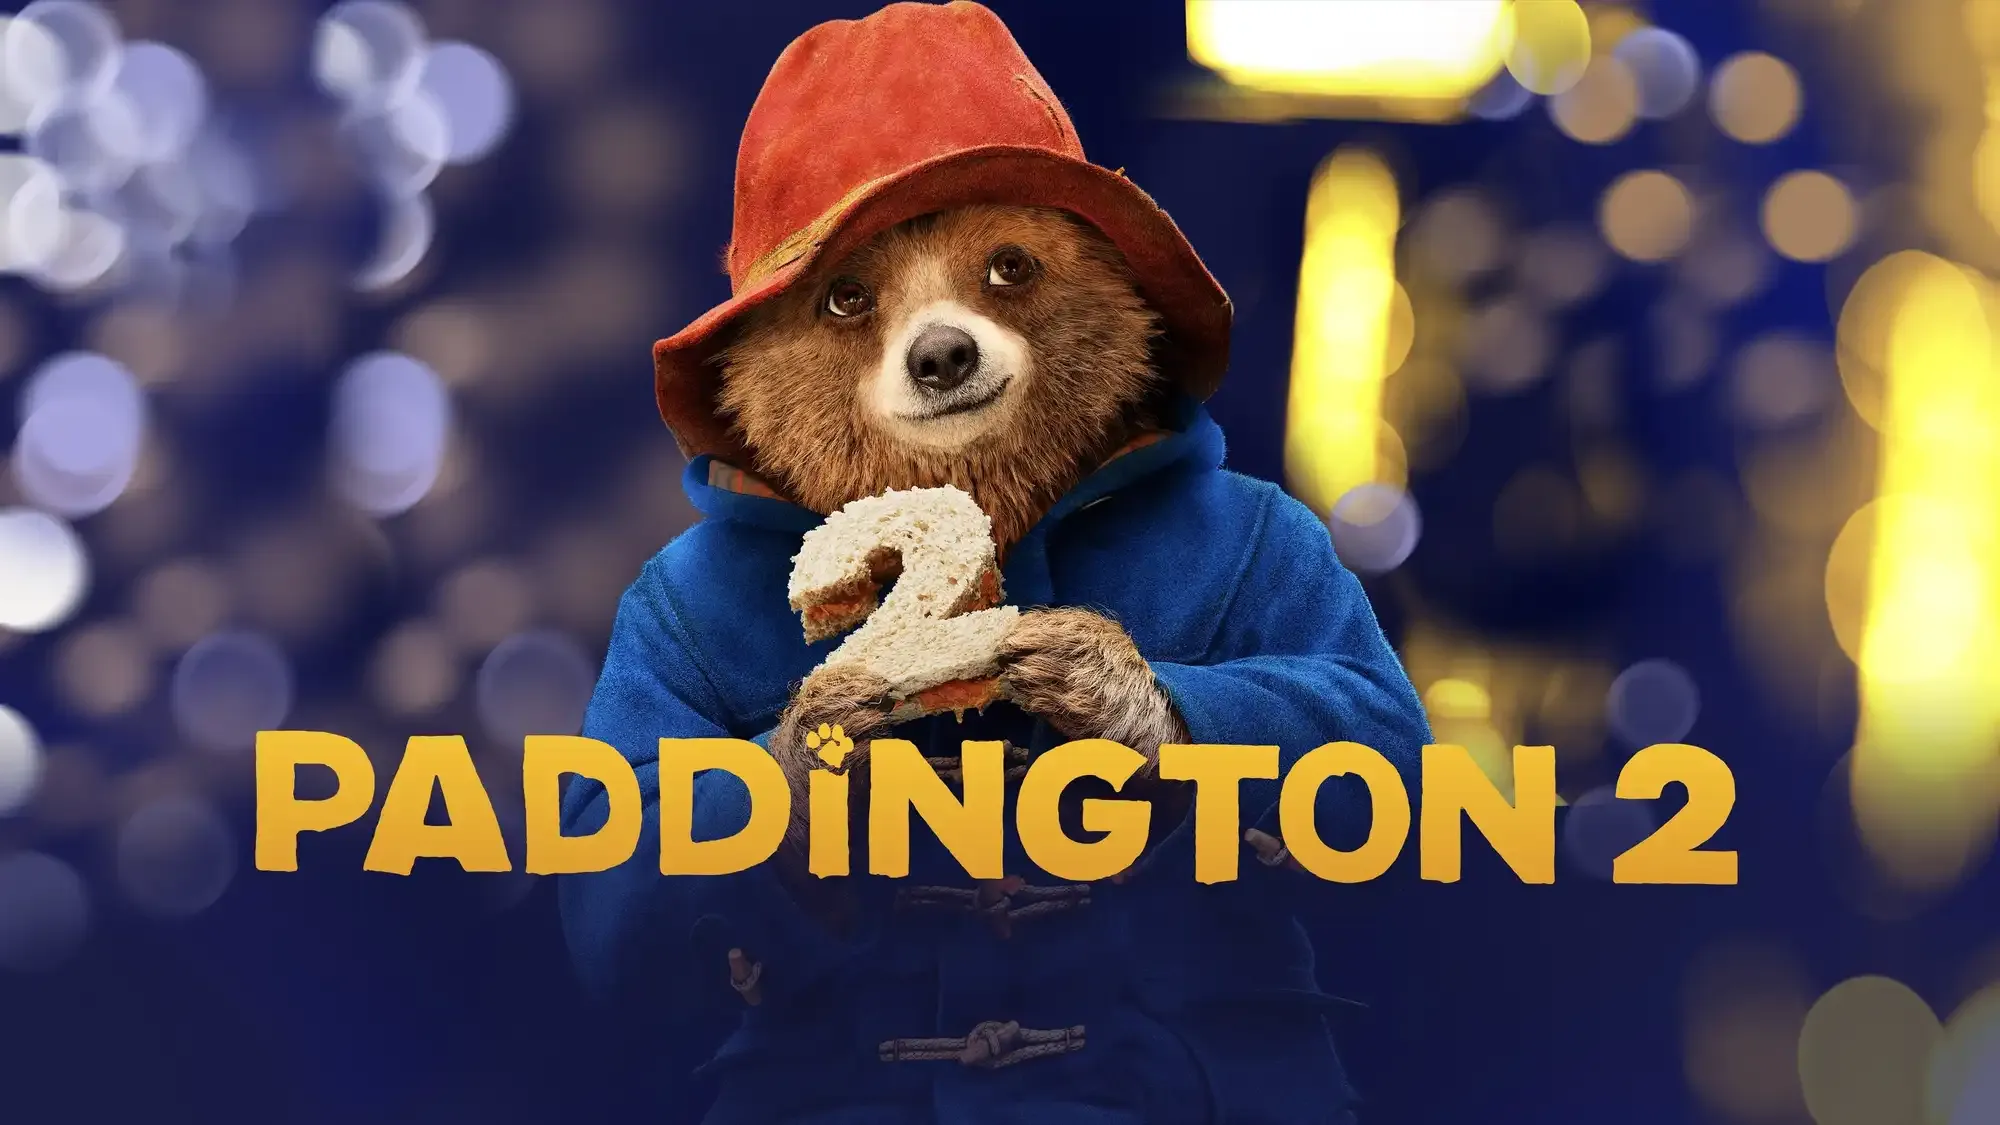 Paddington 2 movie review